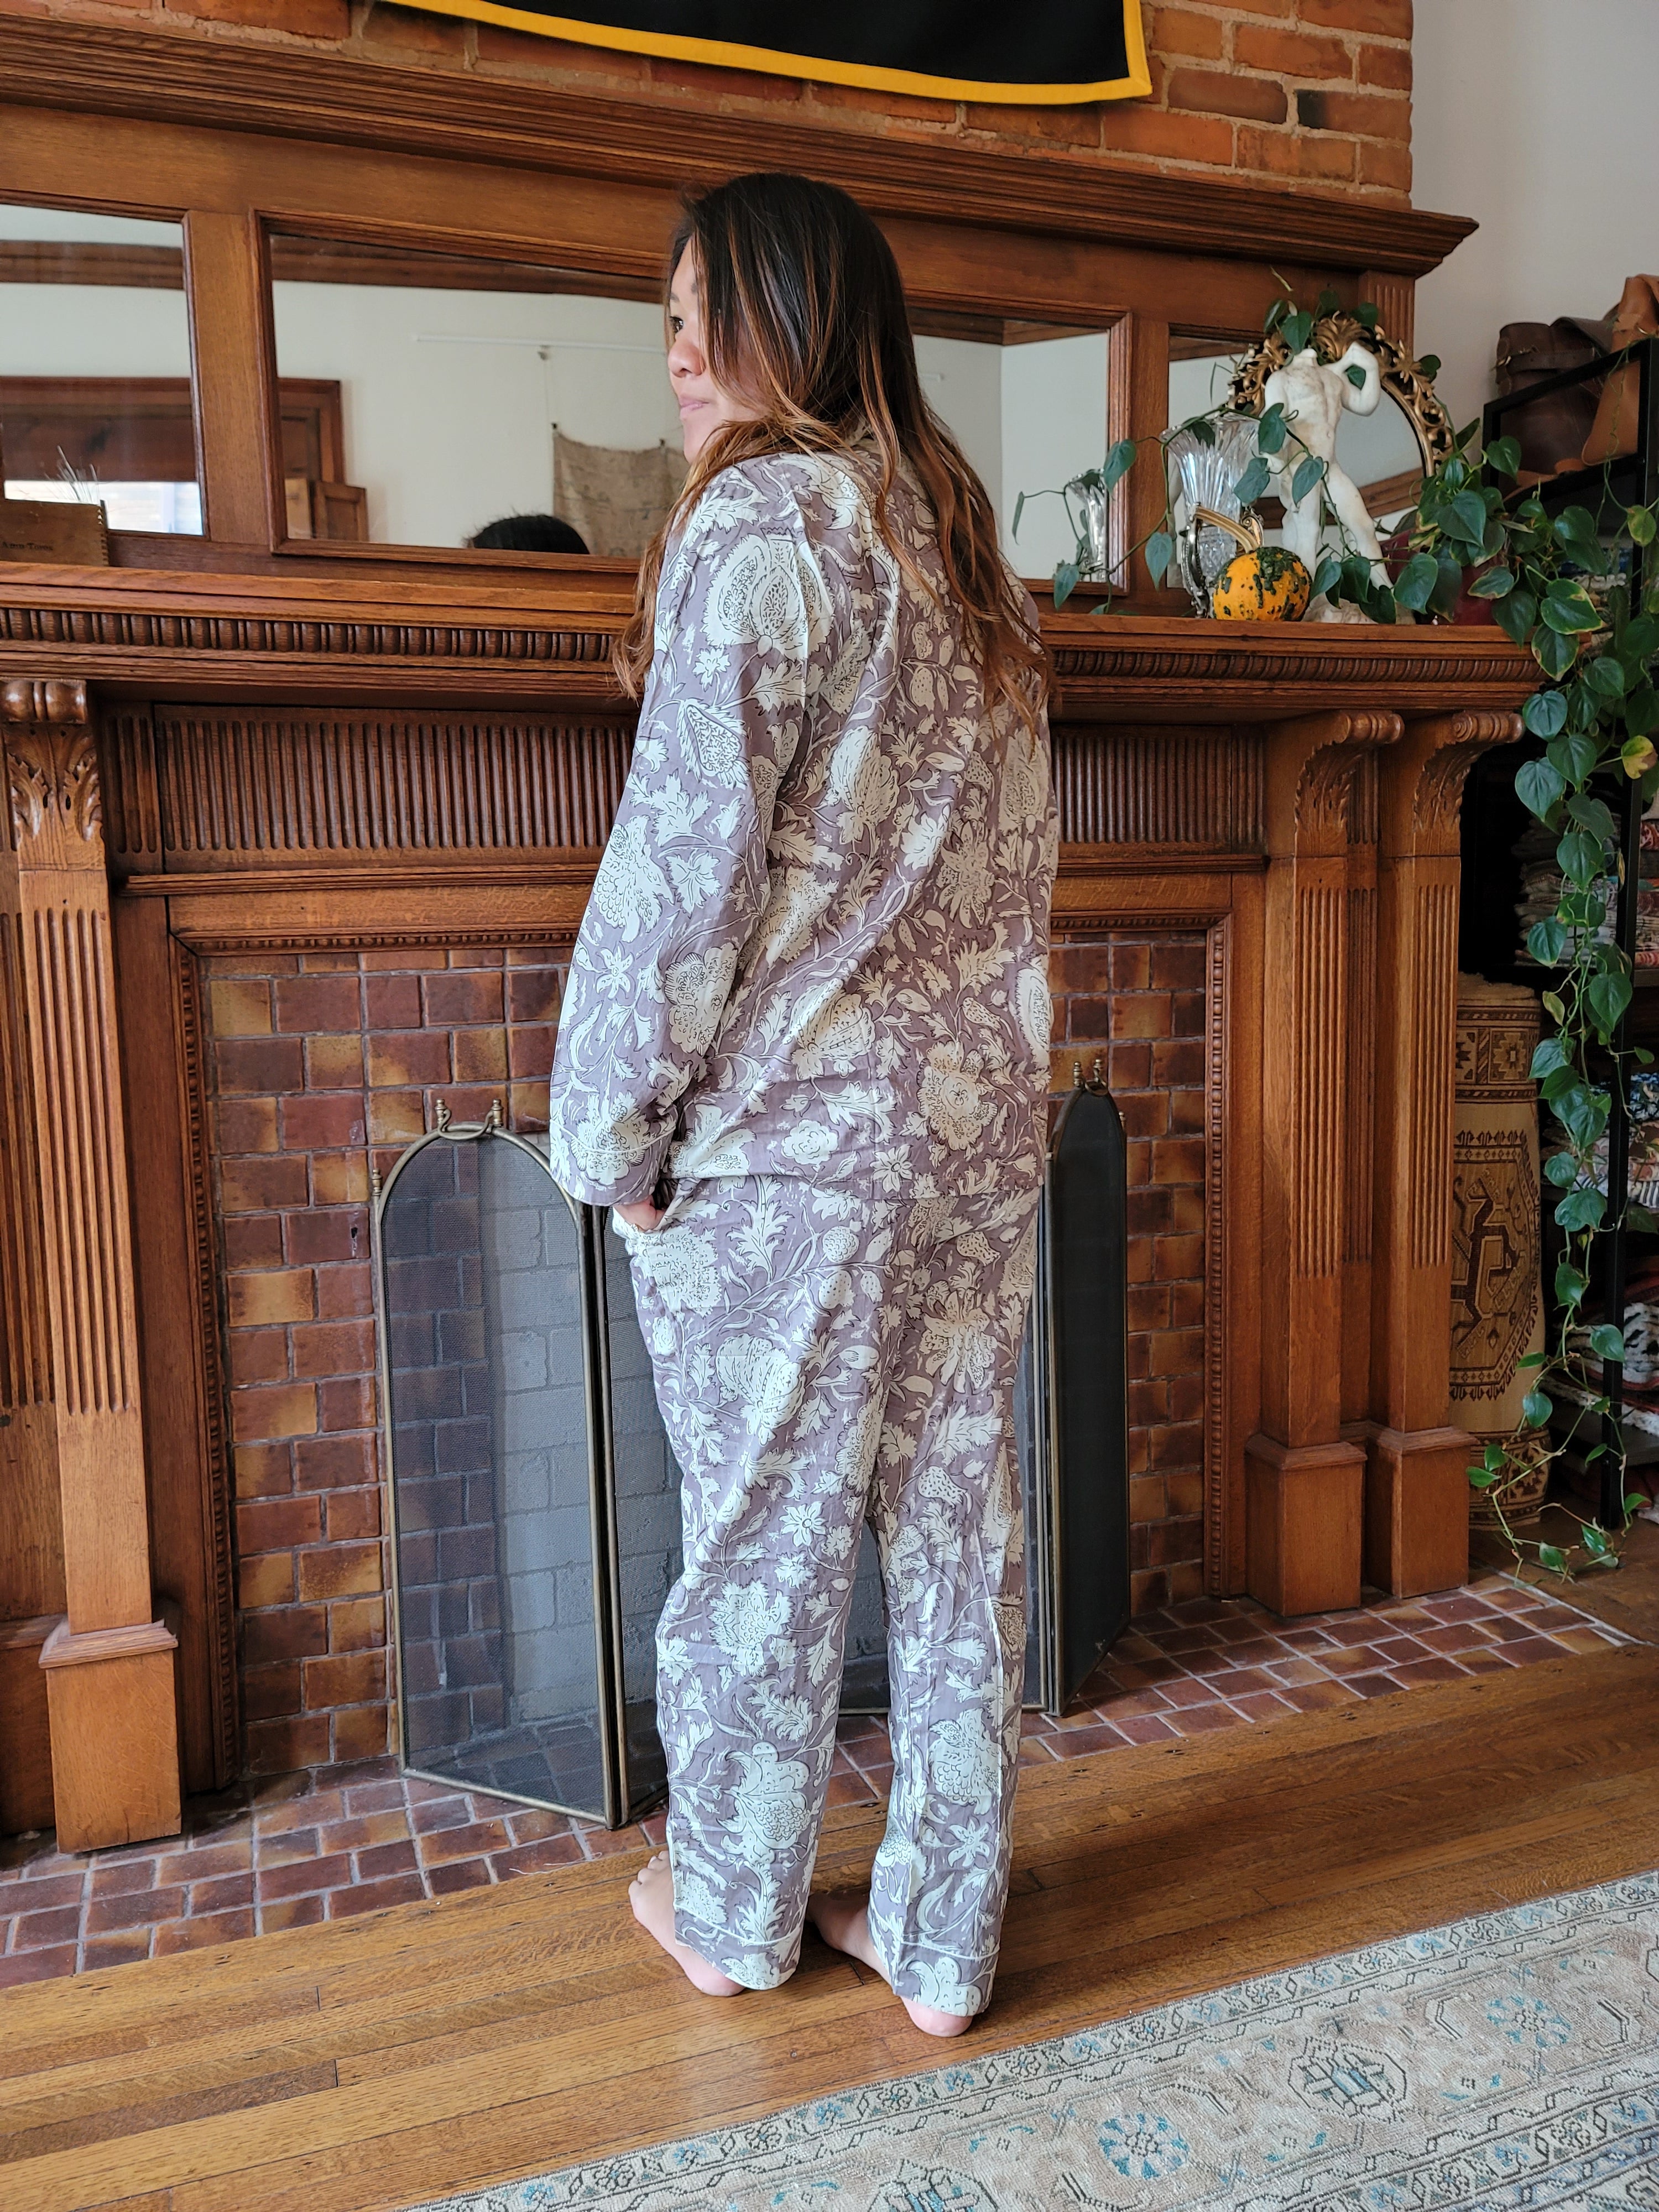 Handmade Pajama Set